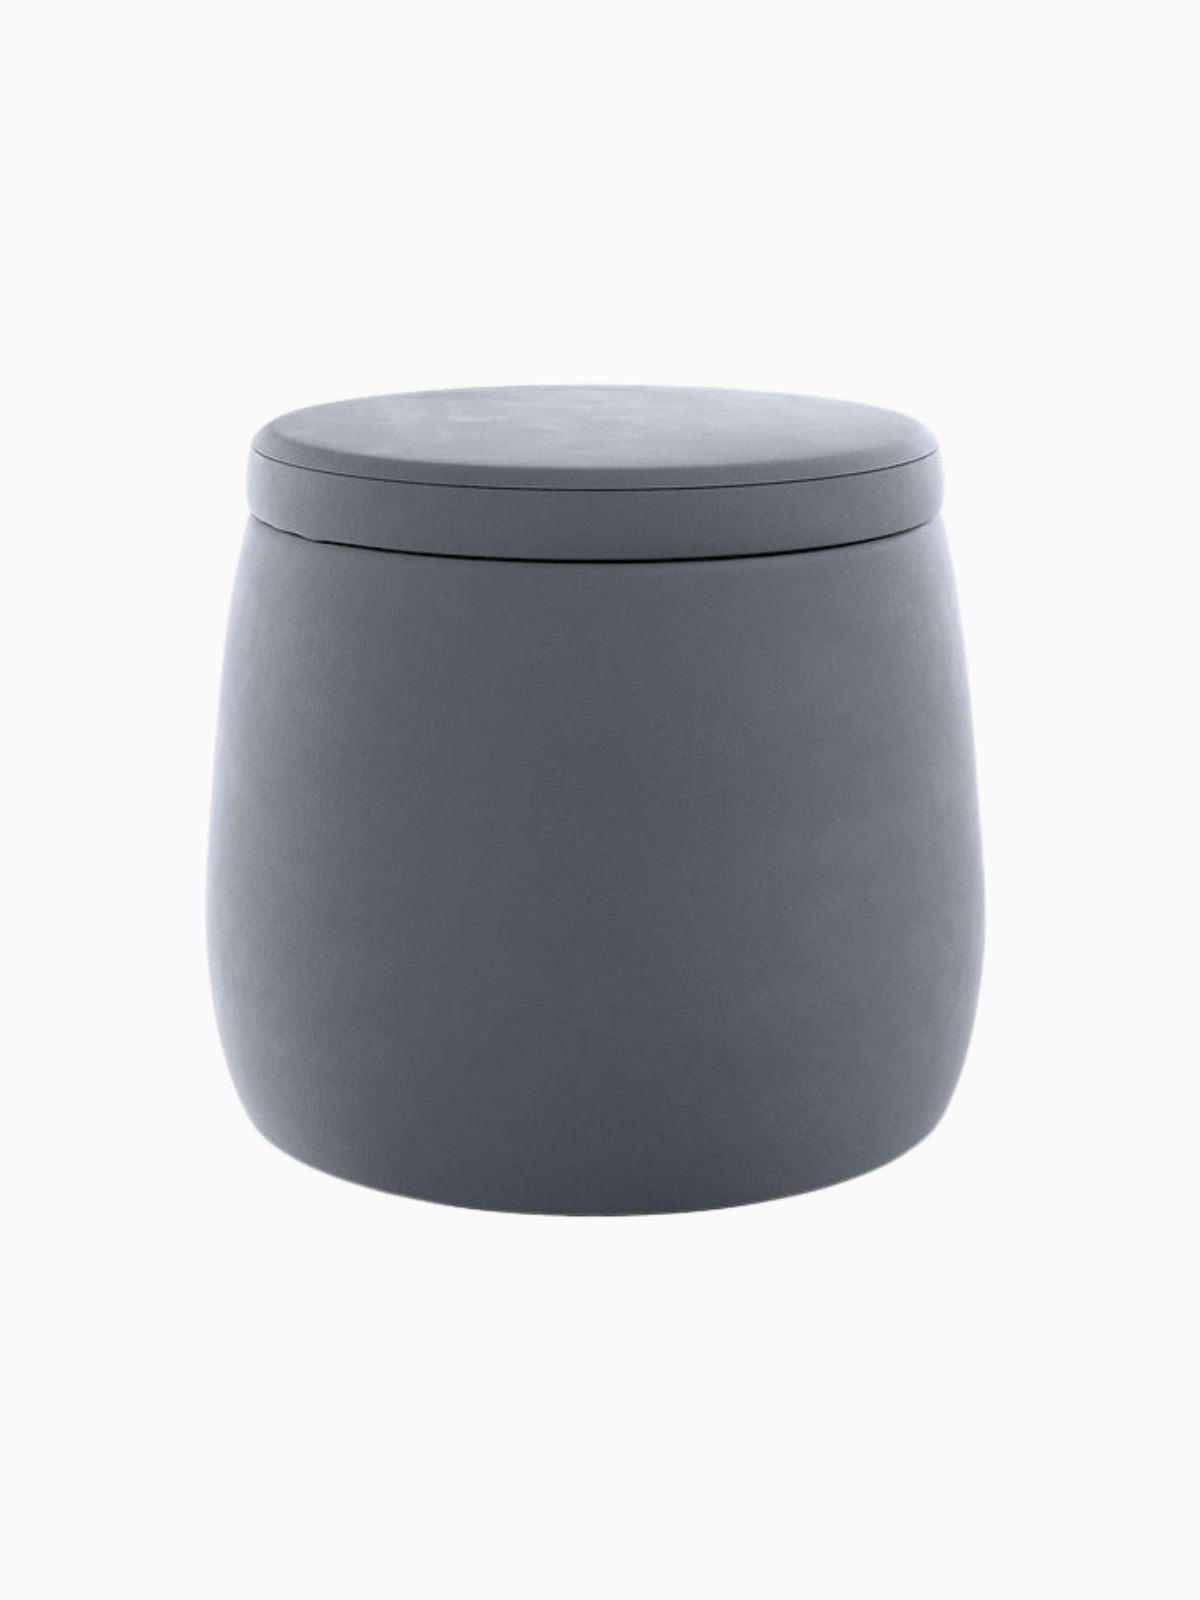 Pouf contenitore Candy Jar in velluto, colore grigio scuro 40x40 cm.-1